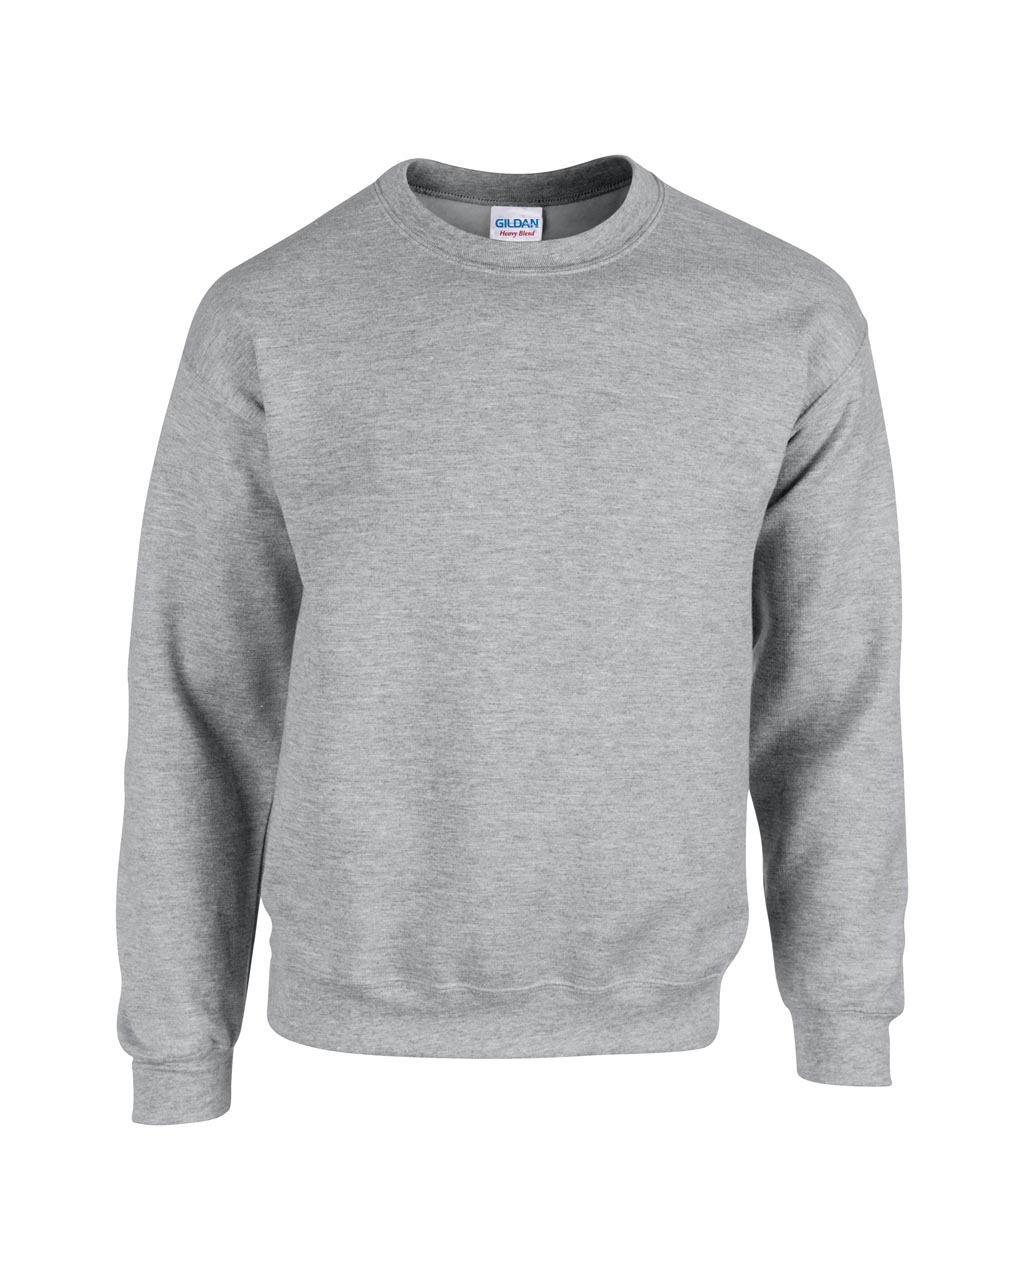 Sport grey Sweater unisex Gildan Heavy Blend 50%bumbac 50%poliester 271 g/mp interior pufos